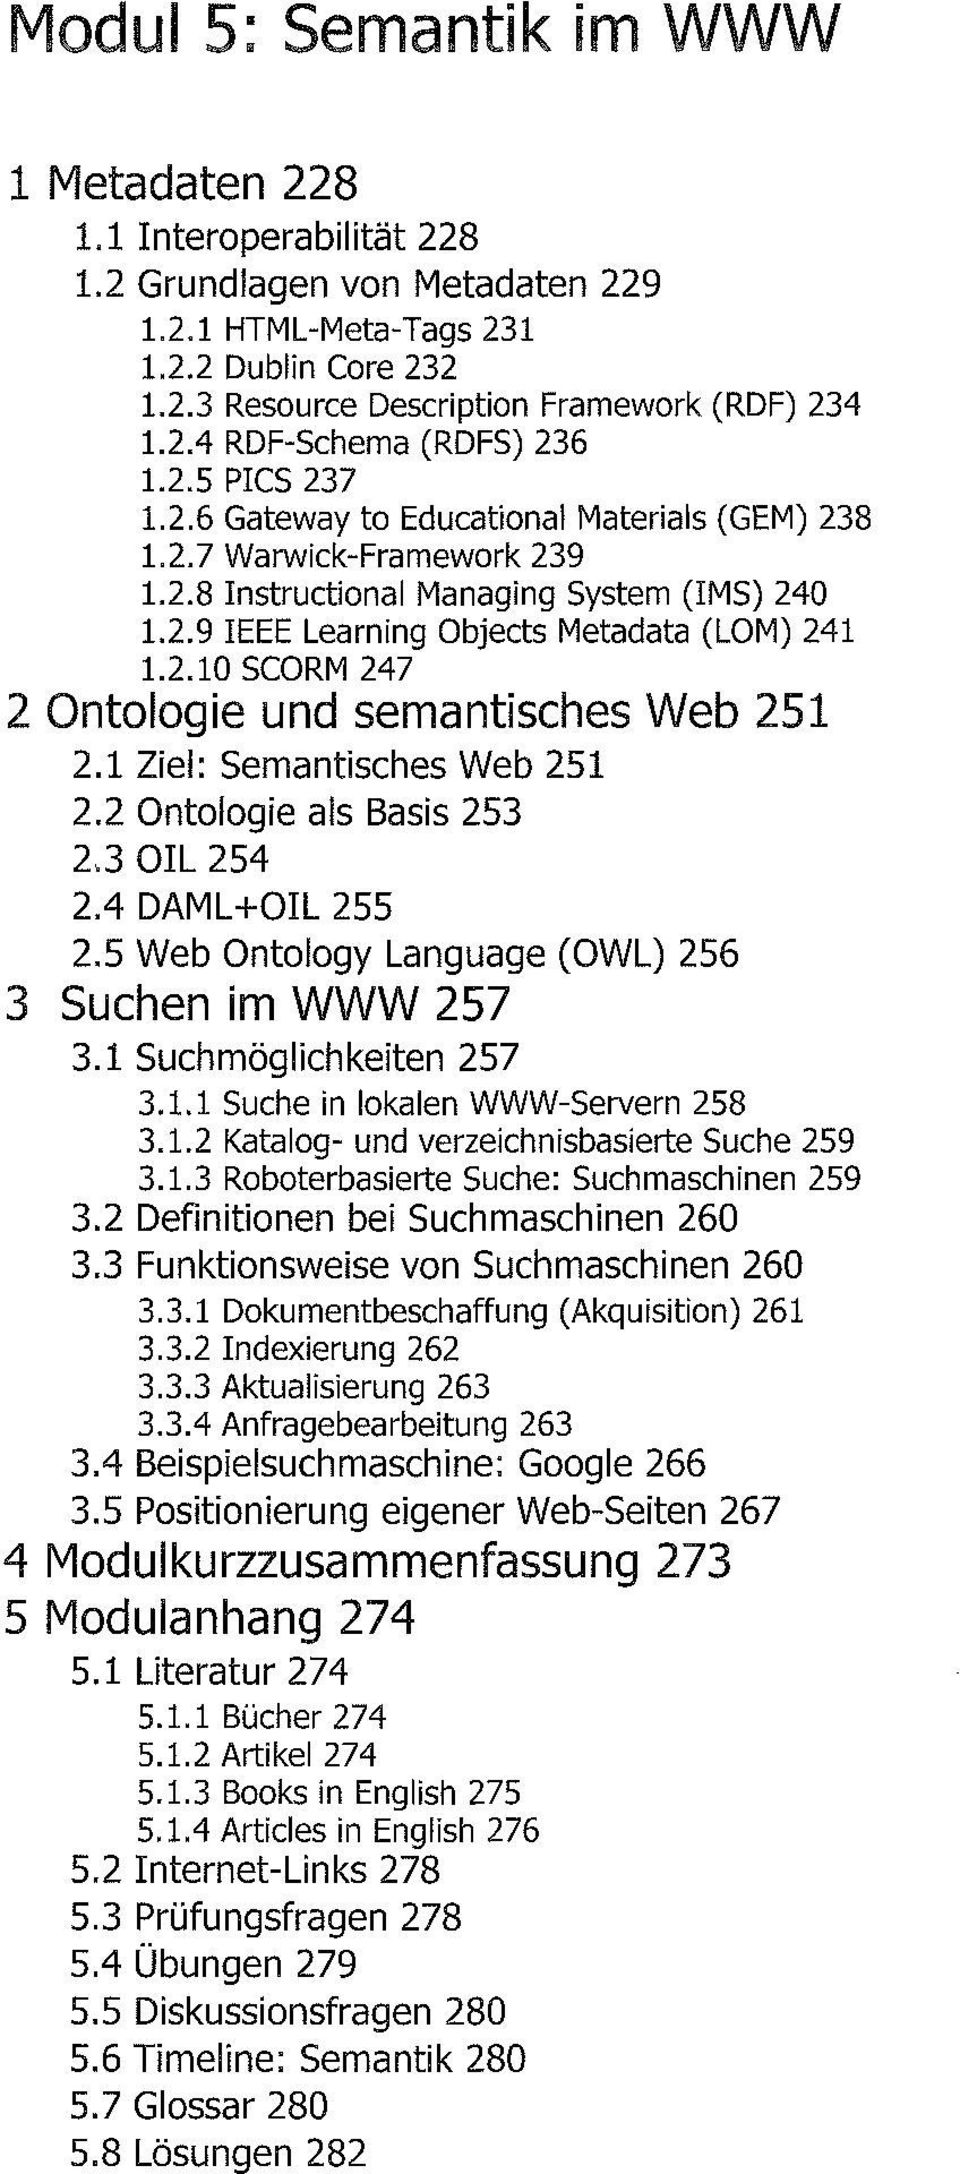 1 Ziel: Semantisches Web 251 2.2 Ontologie als Basis 253 23 OIL 254 2.4 DAML+OIL 255 2.5 Web Ontology Language (OWL) 256 3 Suchen im WWW 257 3.1 Suchmöglichkeiten 257 3.1.1 Suche in lokalen WWW-Servern 258 3.